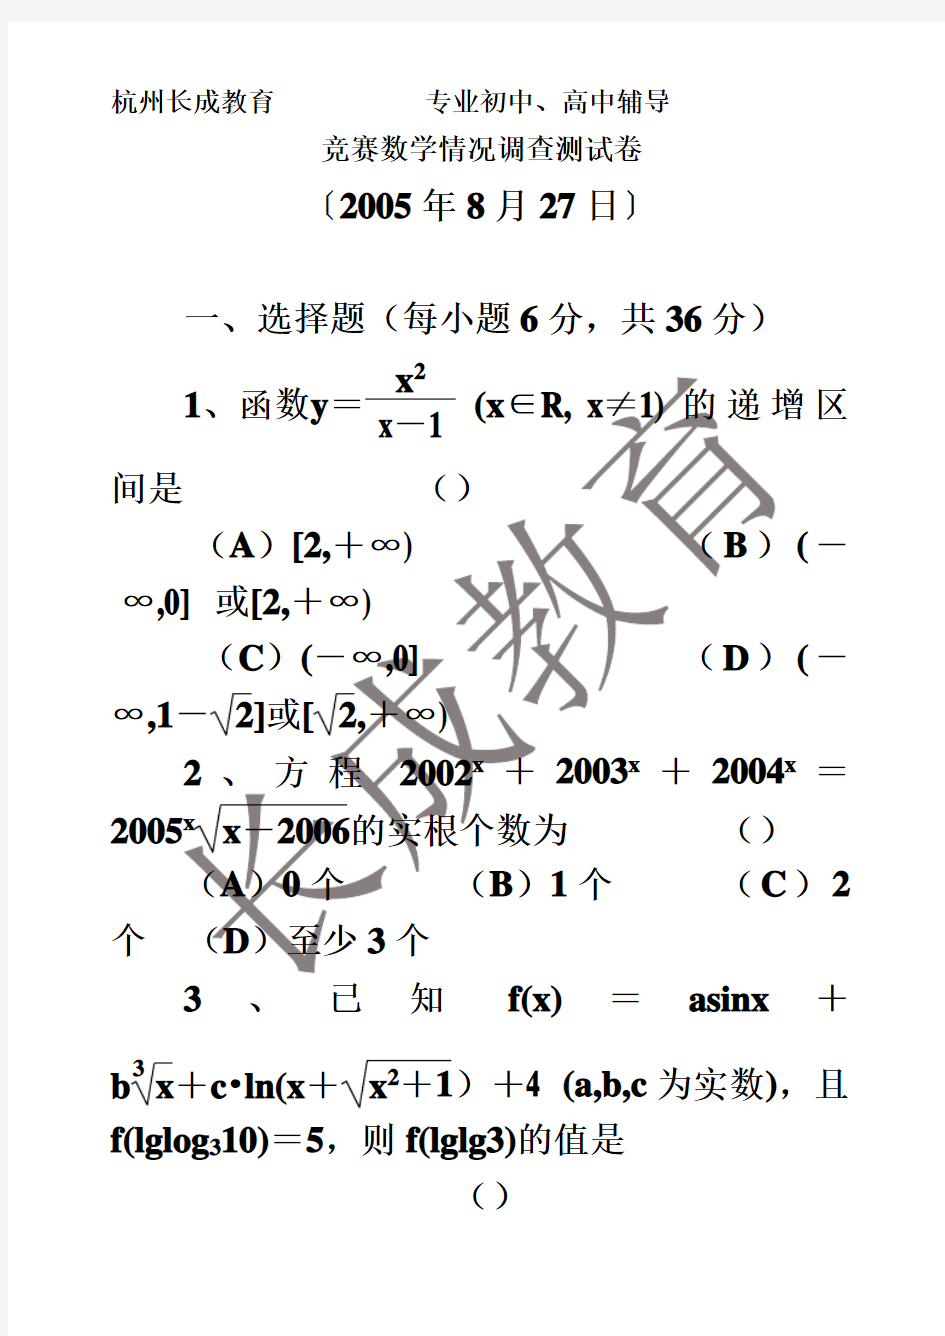 2007年苍南县“姜立夫杯”数学竞赛高一试卷(浙江省)